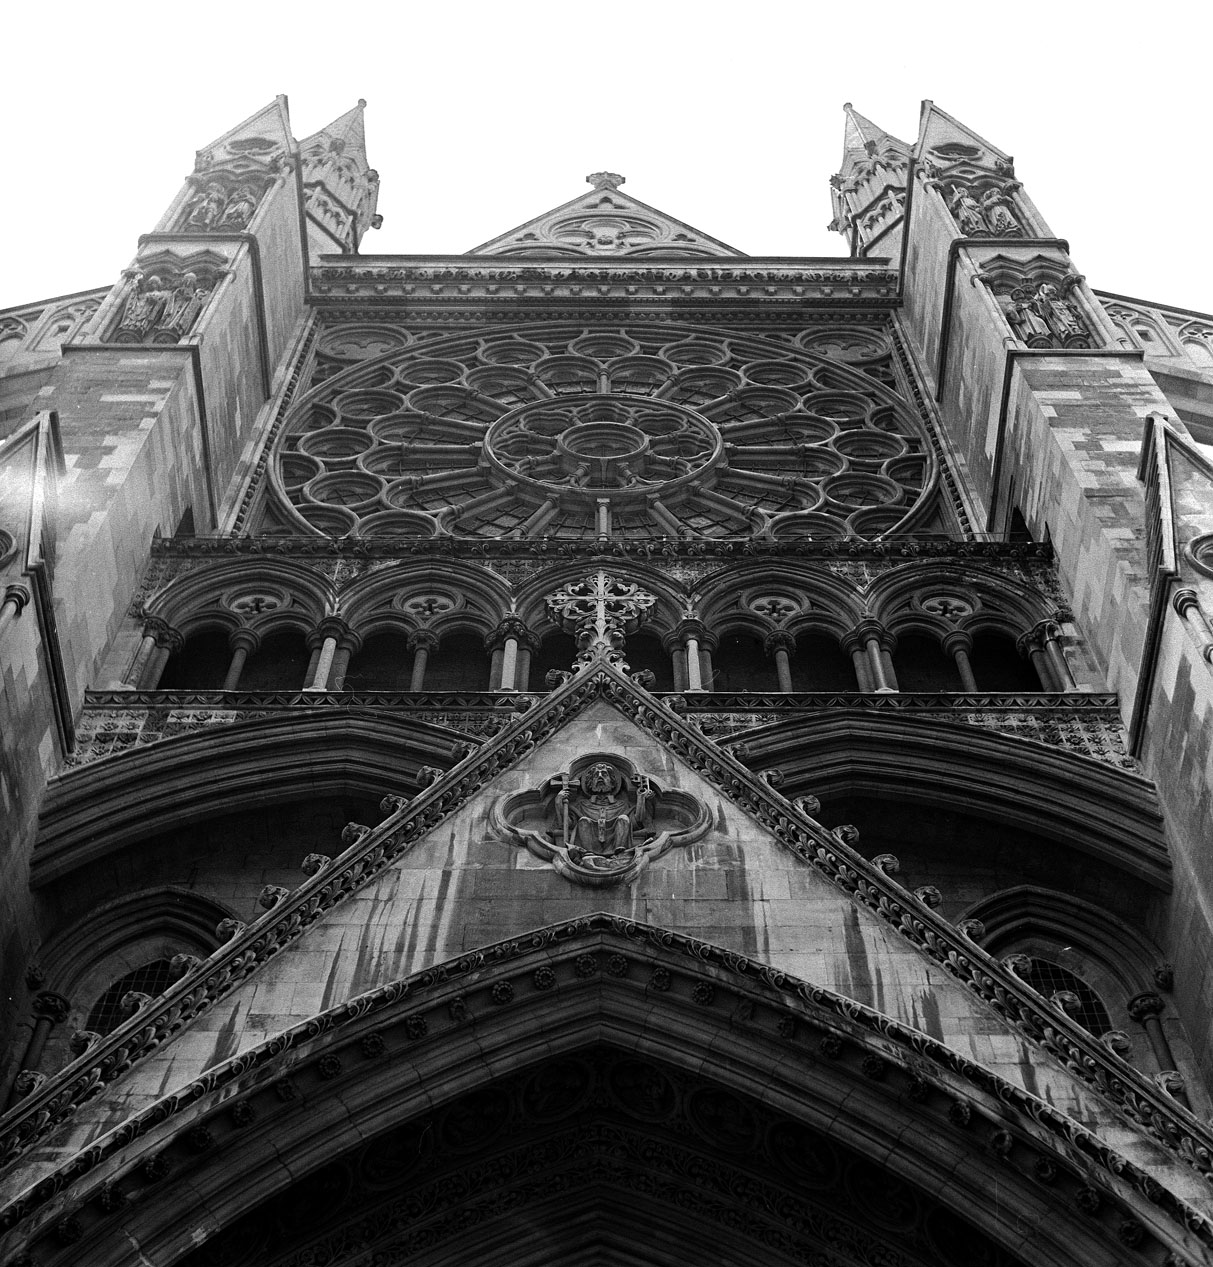 fotka / image Westminster Abbey, Summer in London